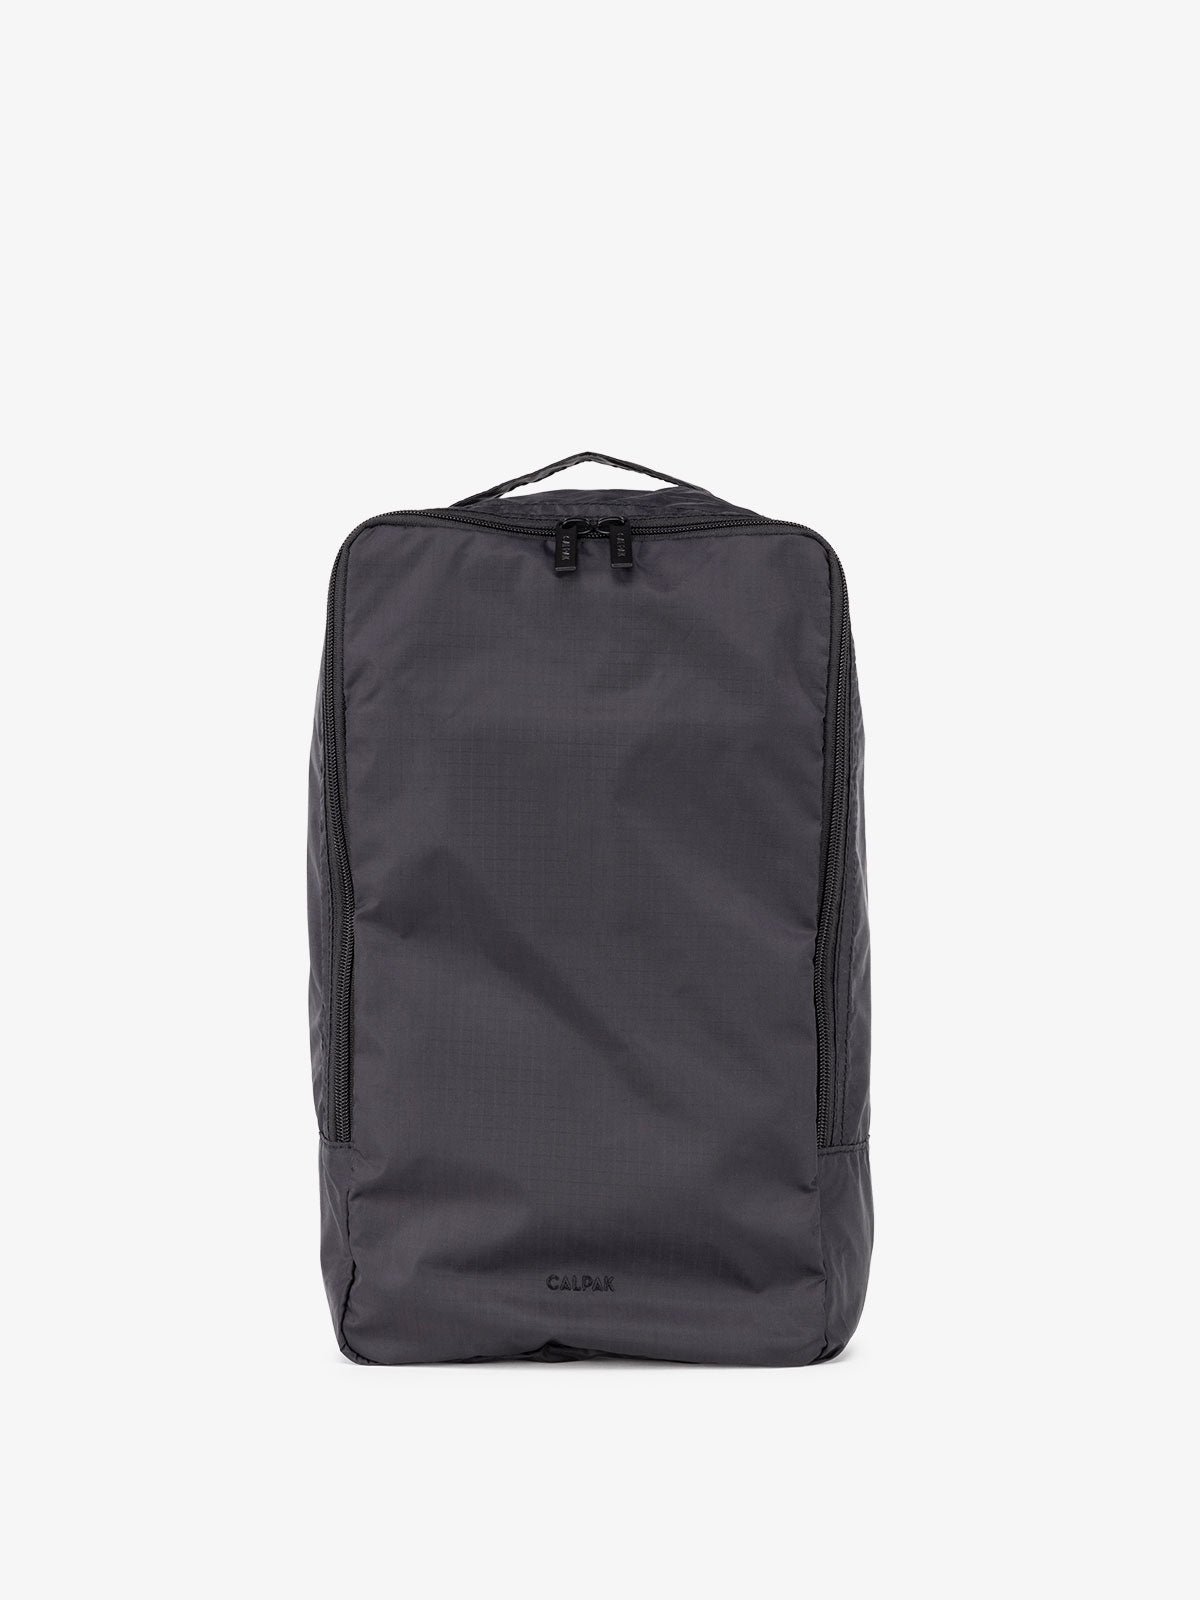 CALPAK Compakt shoe bag set in black